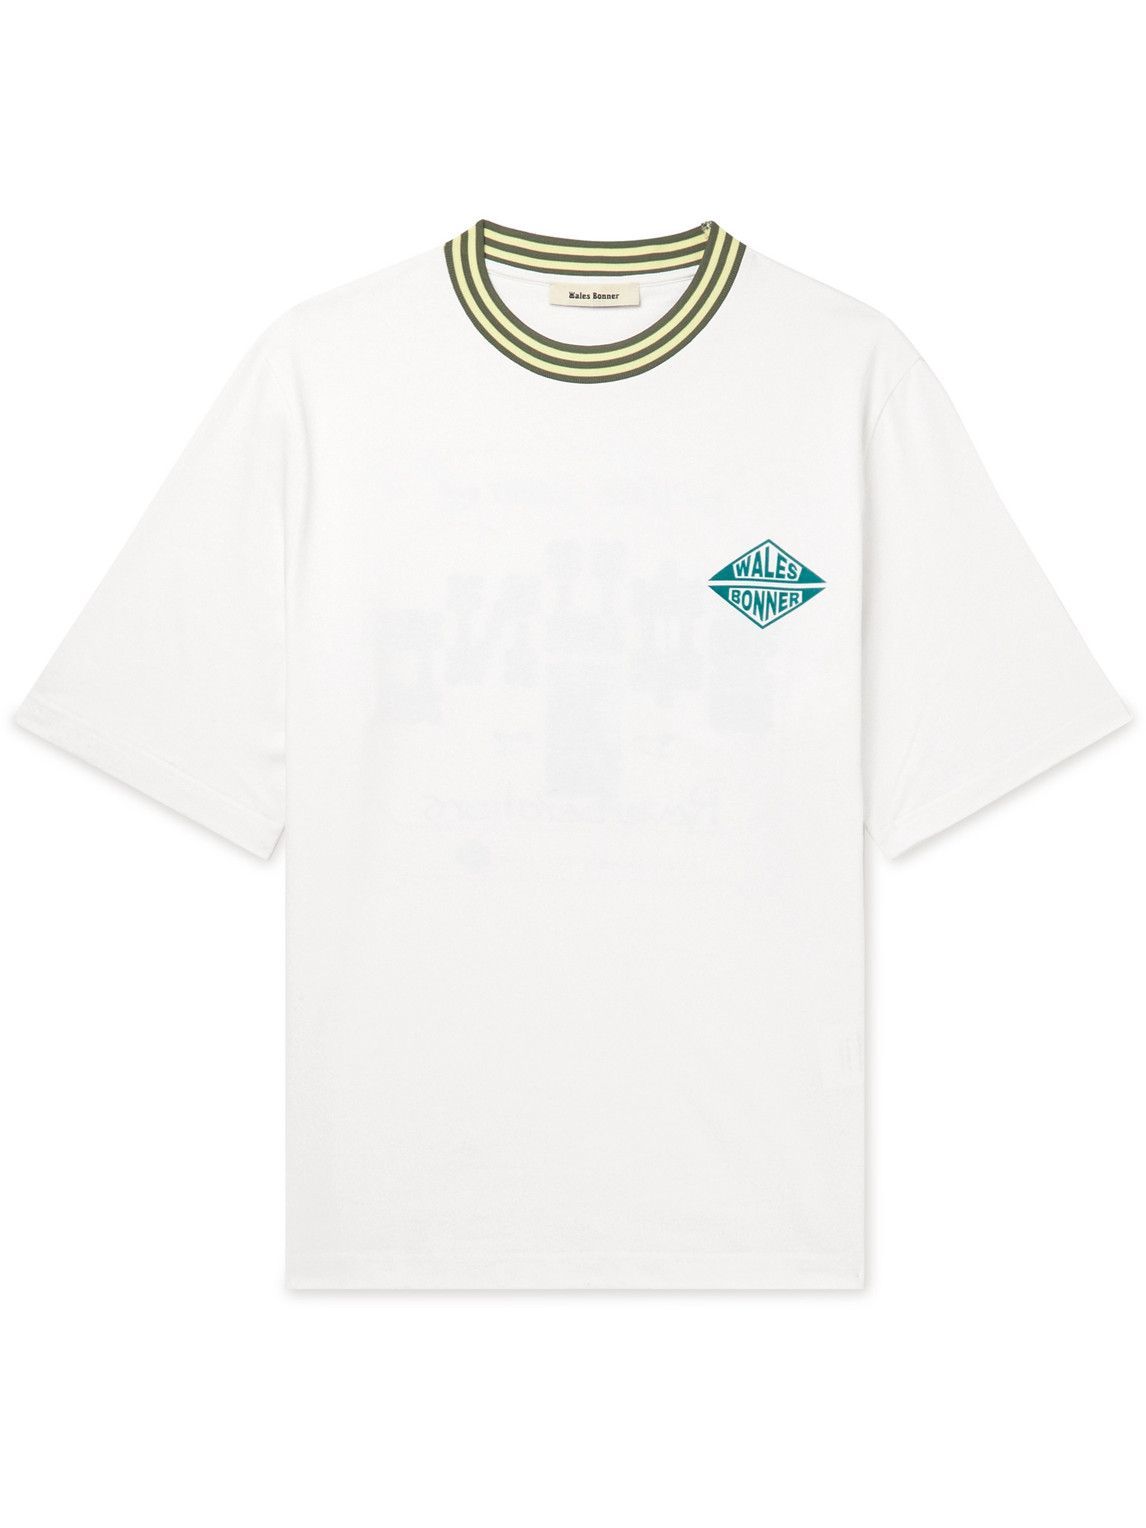 Wales Bonner - Rhythmo Logo-Print Organic Cotton-Jersey T-Shirt - White ...